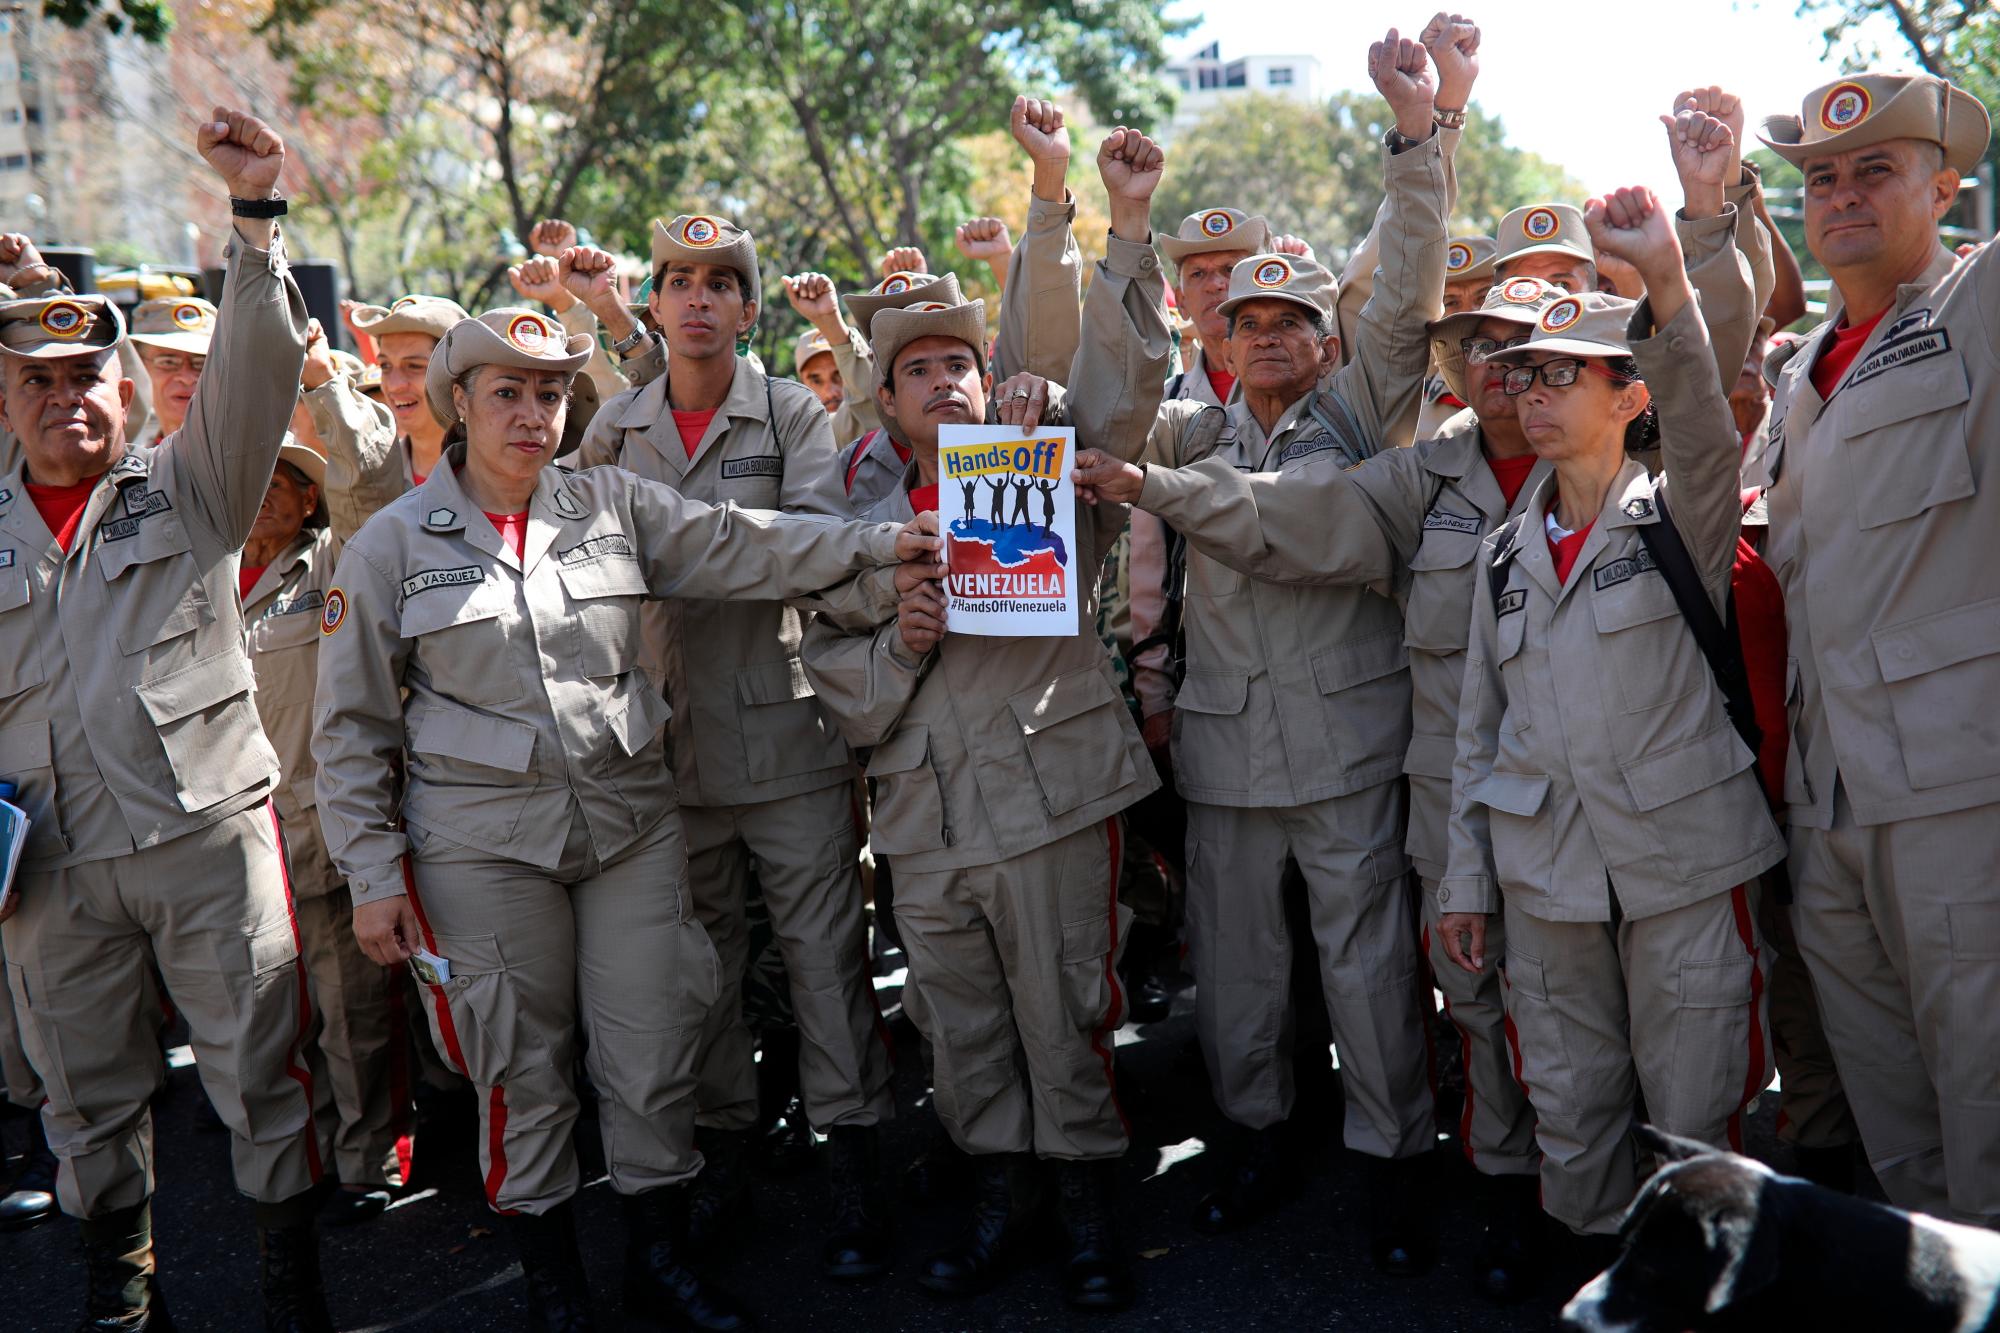 Miembros de la Milicia Bolivariana sostienen un póster durante una manifestación oficialista en Caracas, Venezuela, el martes 12 de febrero de 2019. Casi tres semanas después de que la administración de Trump respaldó un esfuerzo total para expulsar al presidente venezolano Nicolás Maduro, el asediado El líder socialista mantiene fuertes y desafía las predicciones de una desaparición inminente.